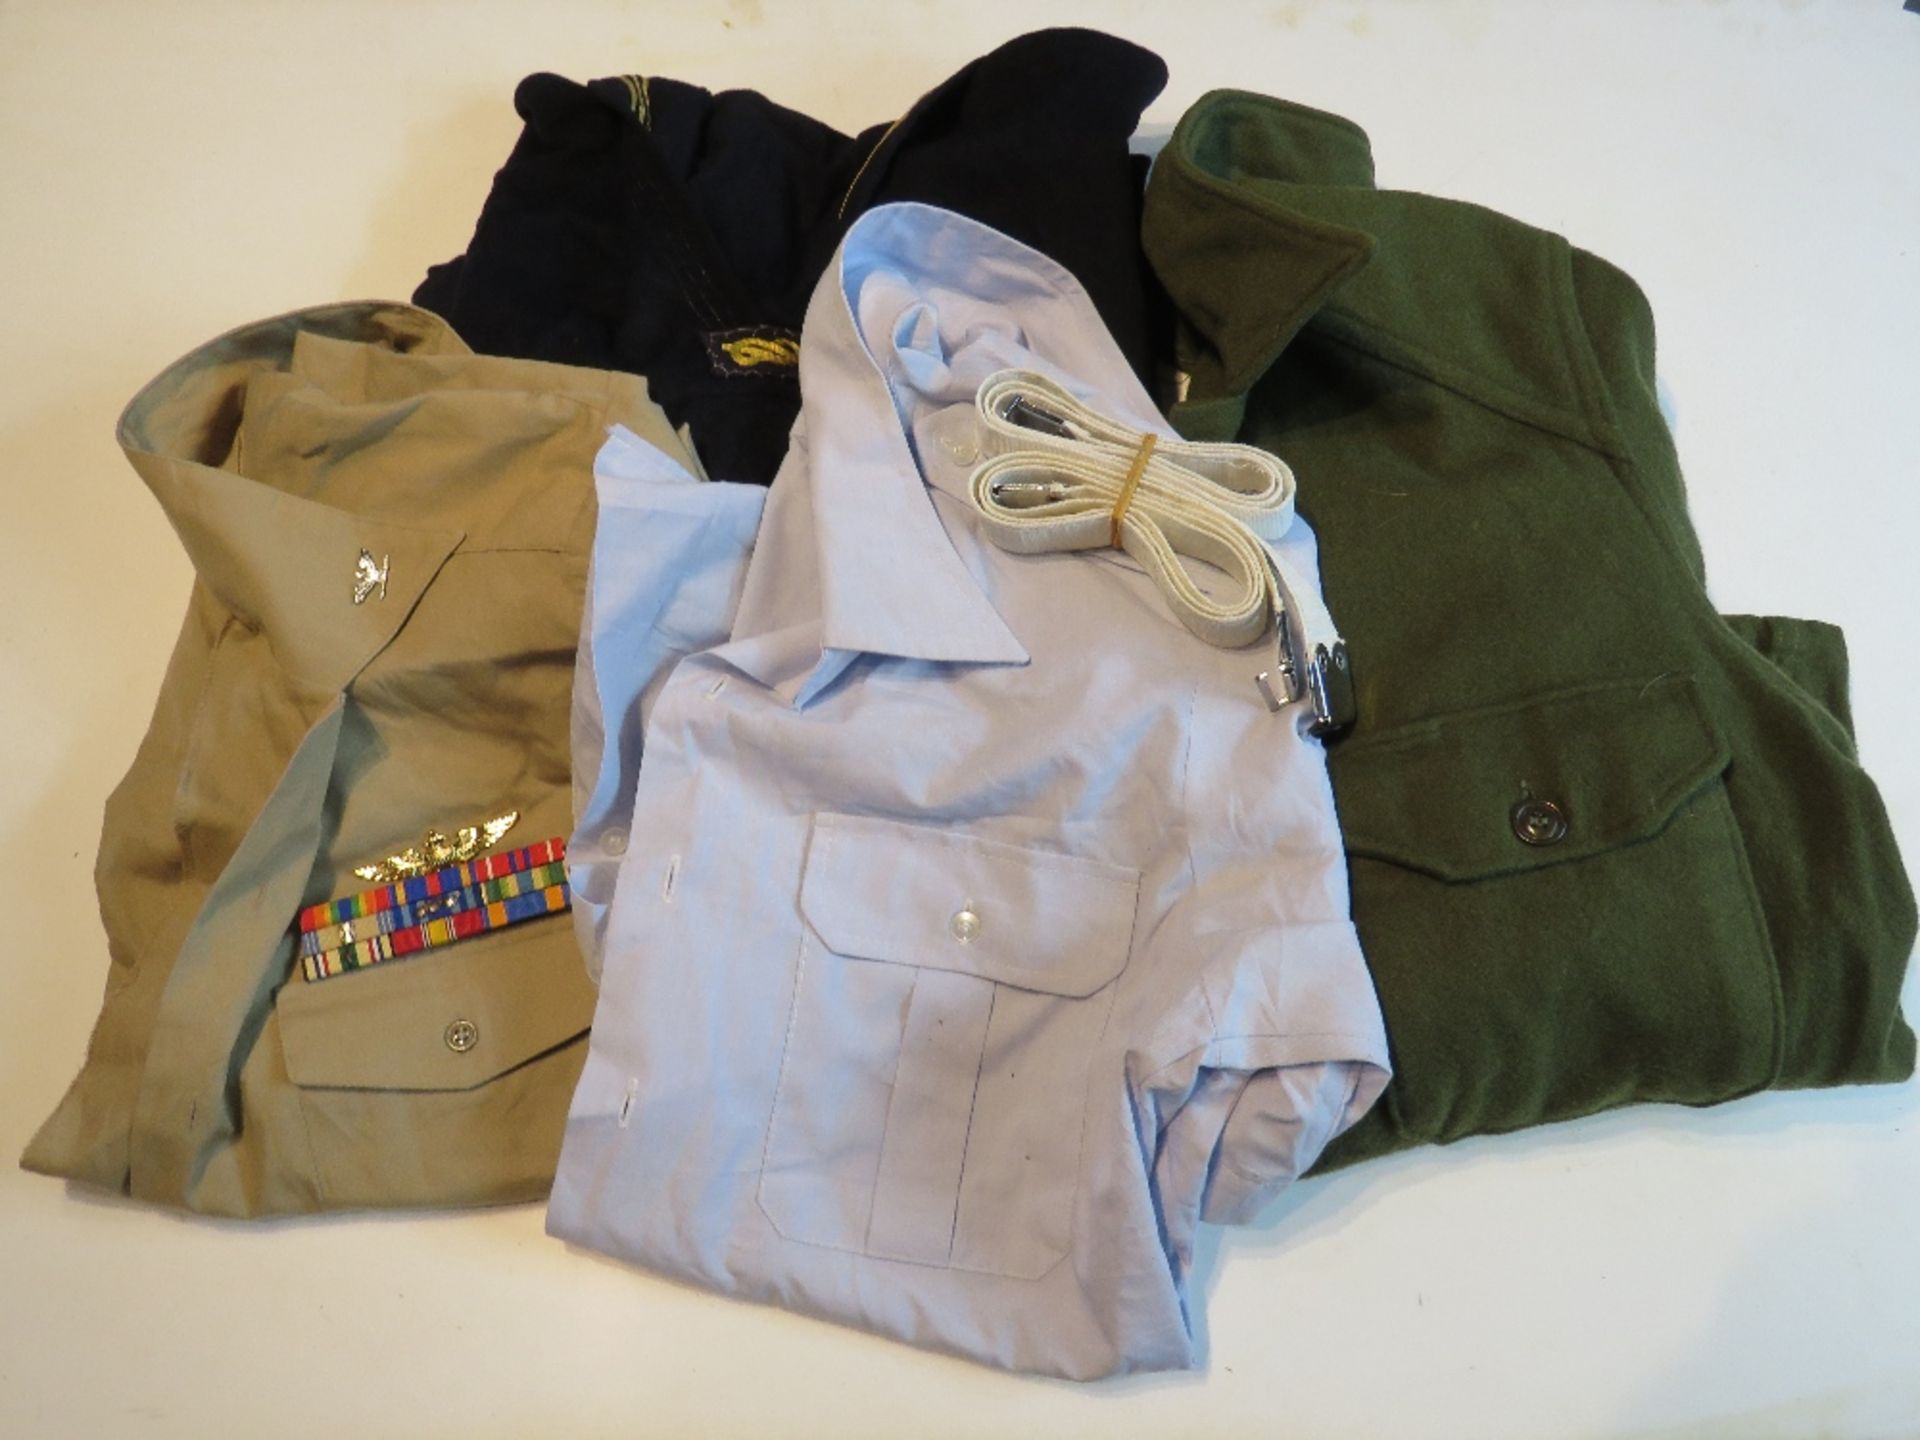 A US wool jacket size medium, a US Air Force shirt, US Navy shirt with Bars,